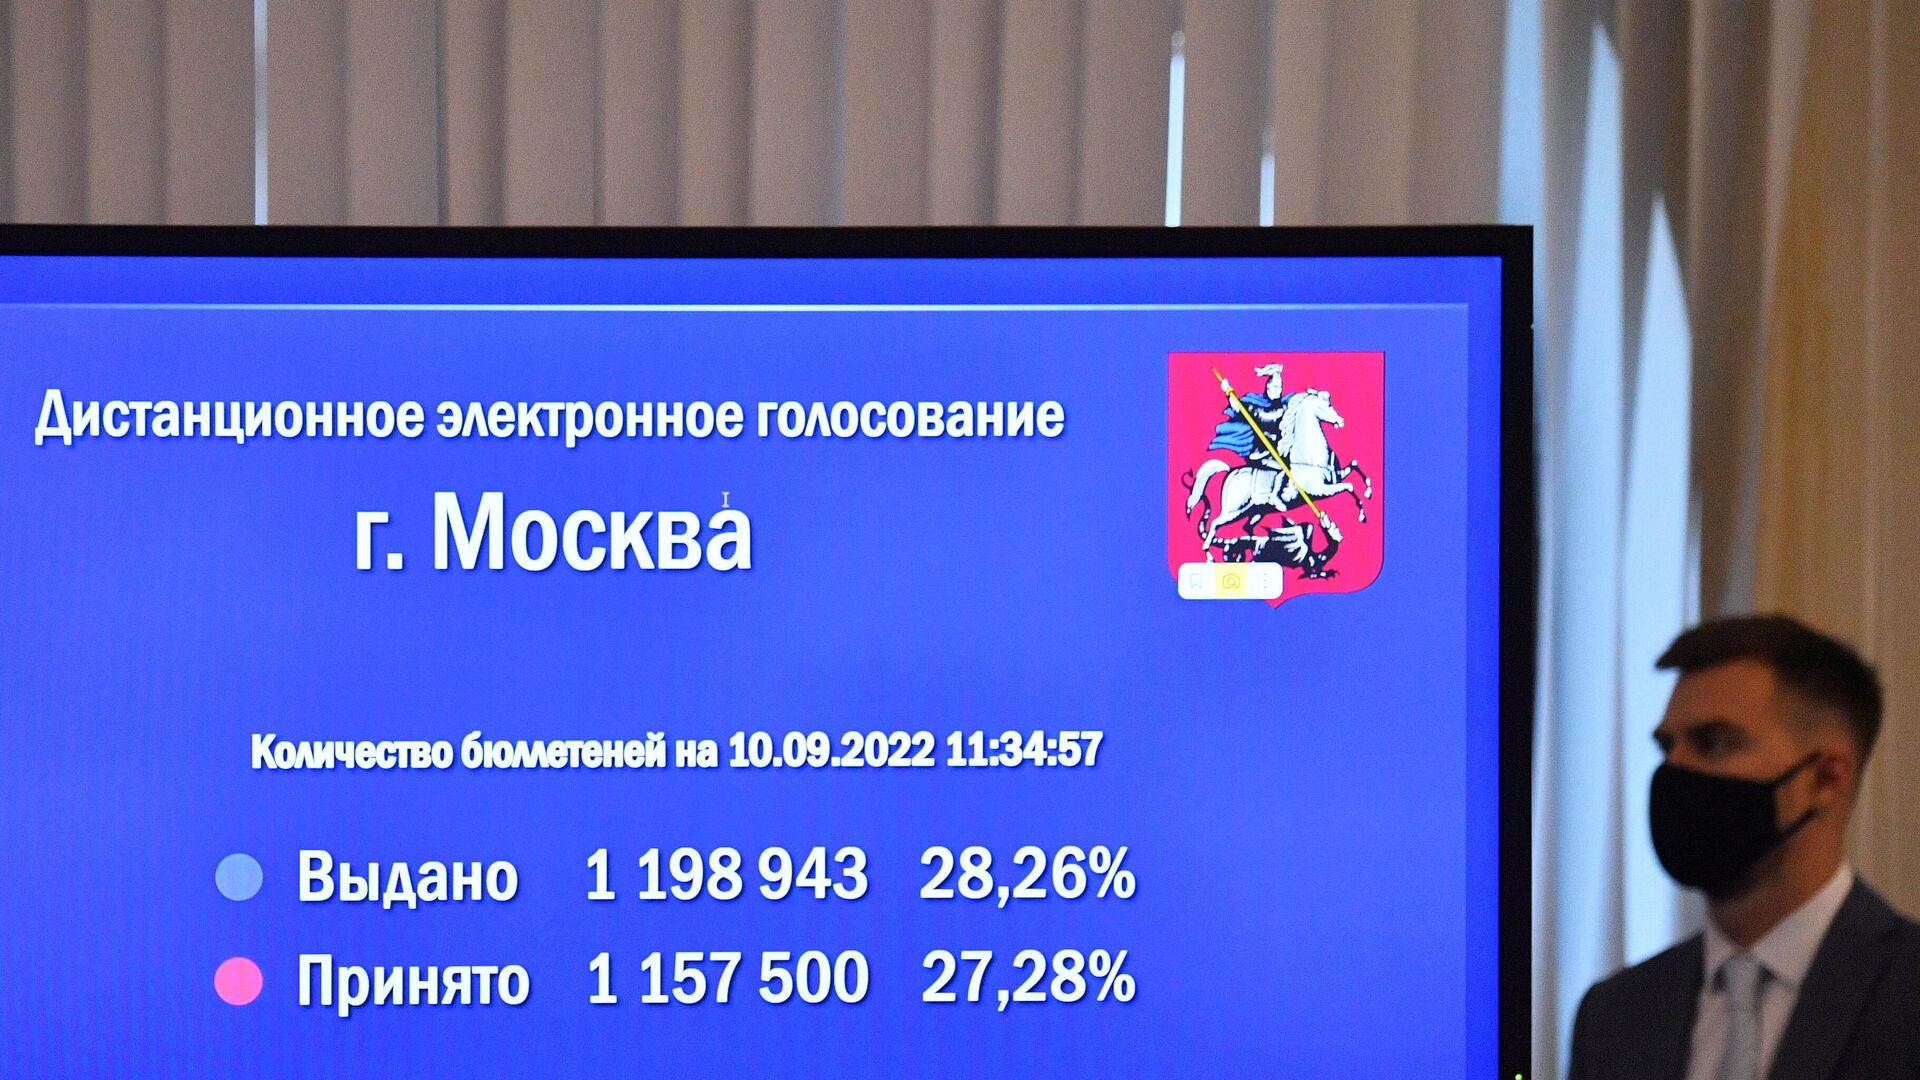 Цик сколько проголосовало. Голосование в Москве 2022. Выборы муниципальных депутатов в Москве 2022. Электронное голосование. ДЭГ голосование 2022.